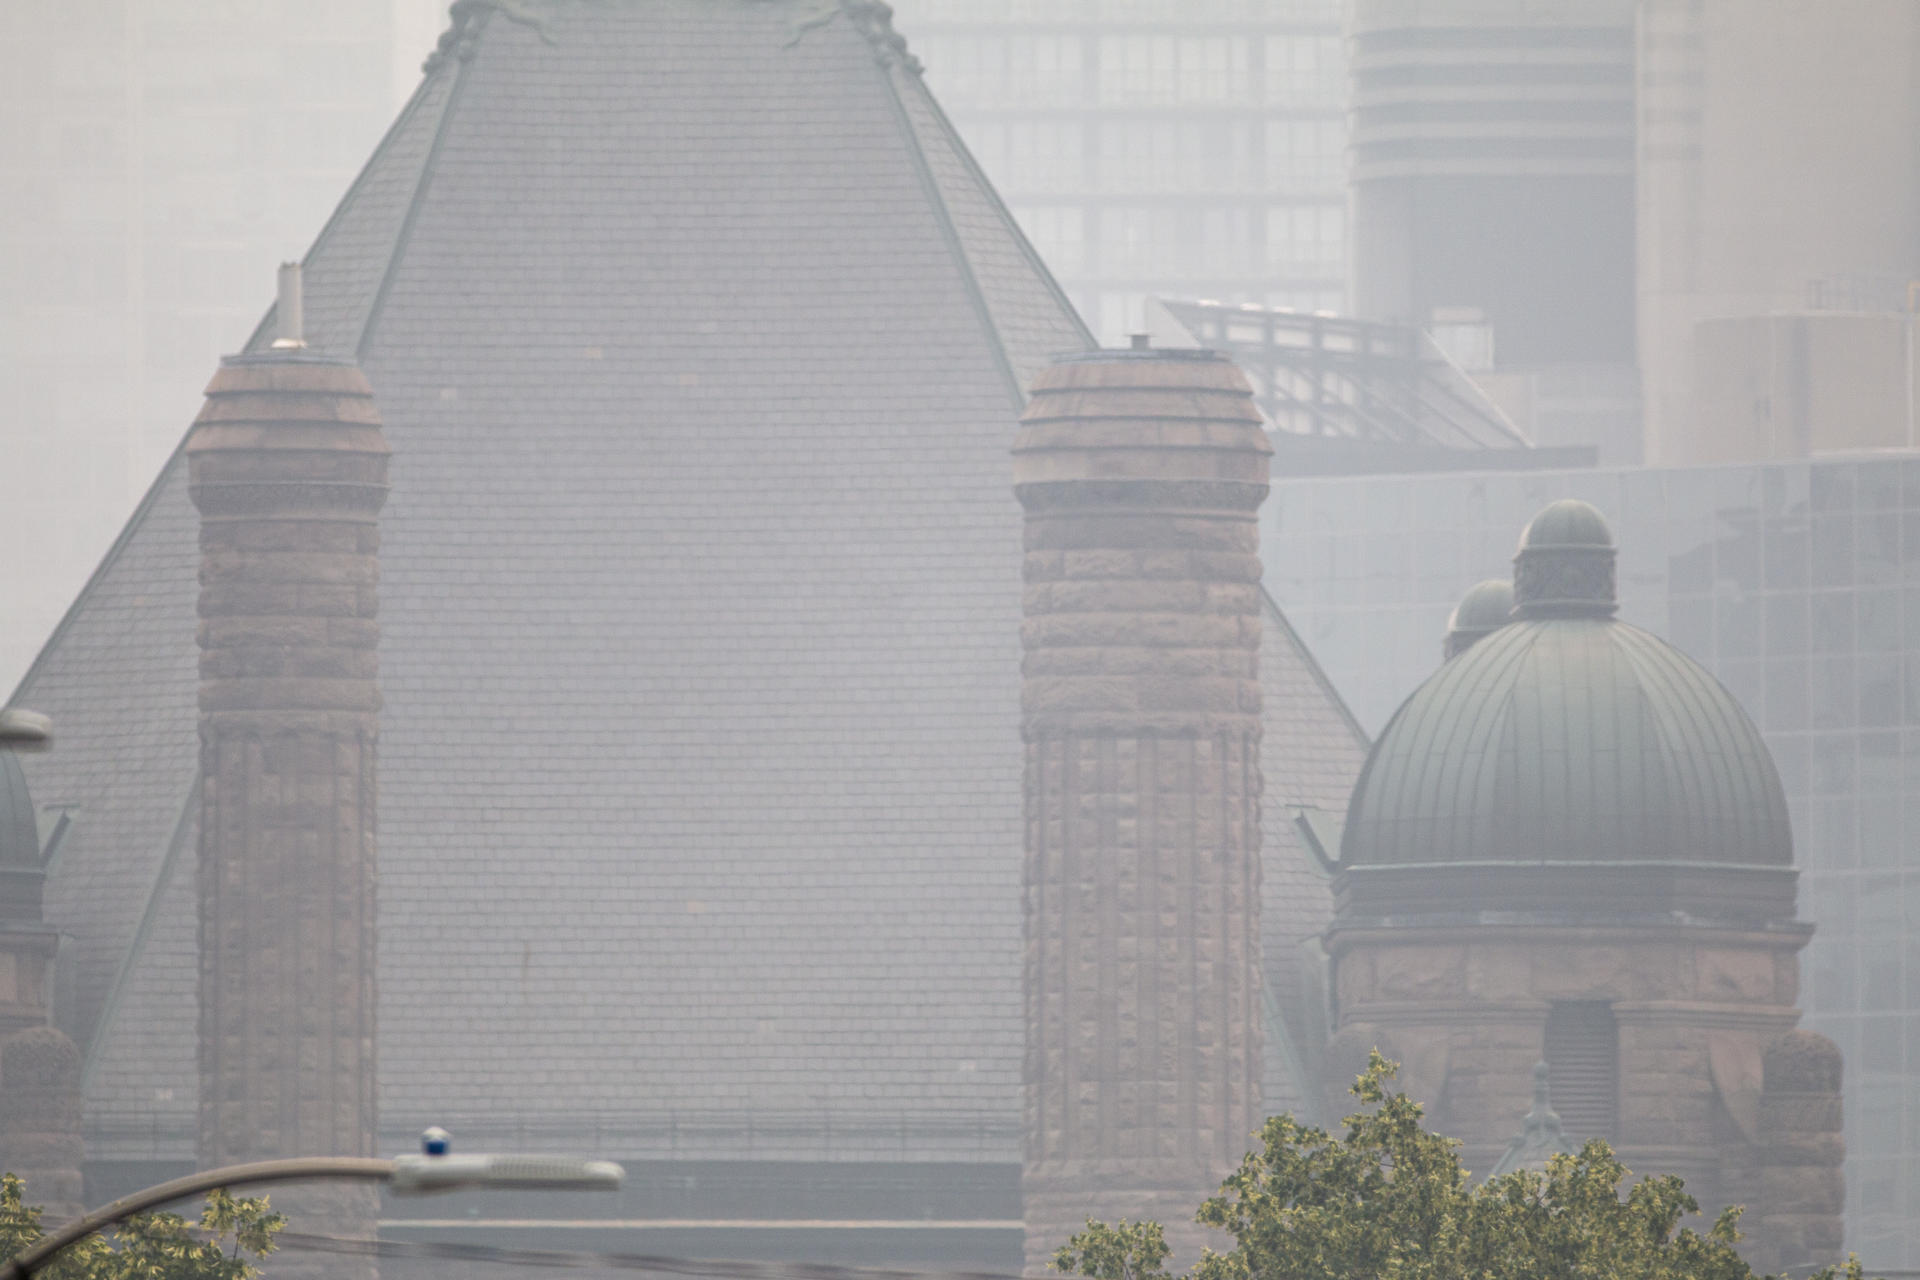 Fotografía de un edificio envuelto en humo de los incendios forestales de la provincia de Quebec, desde una calle en el centro de la ciudad de Toronto (Canadá). Imagen de archivo. EFE/Julio César Rivas